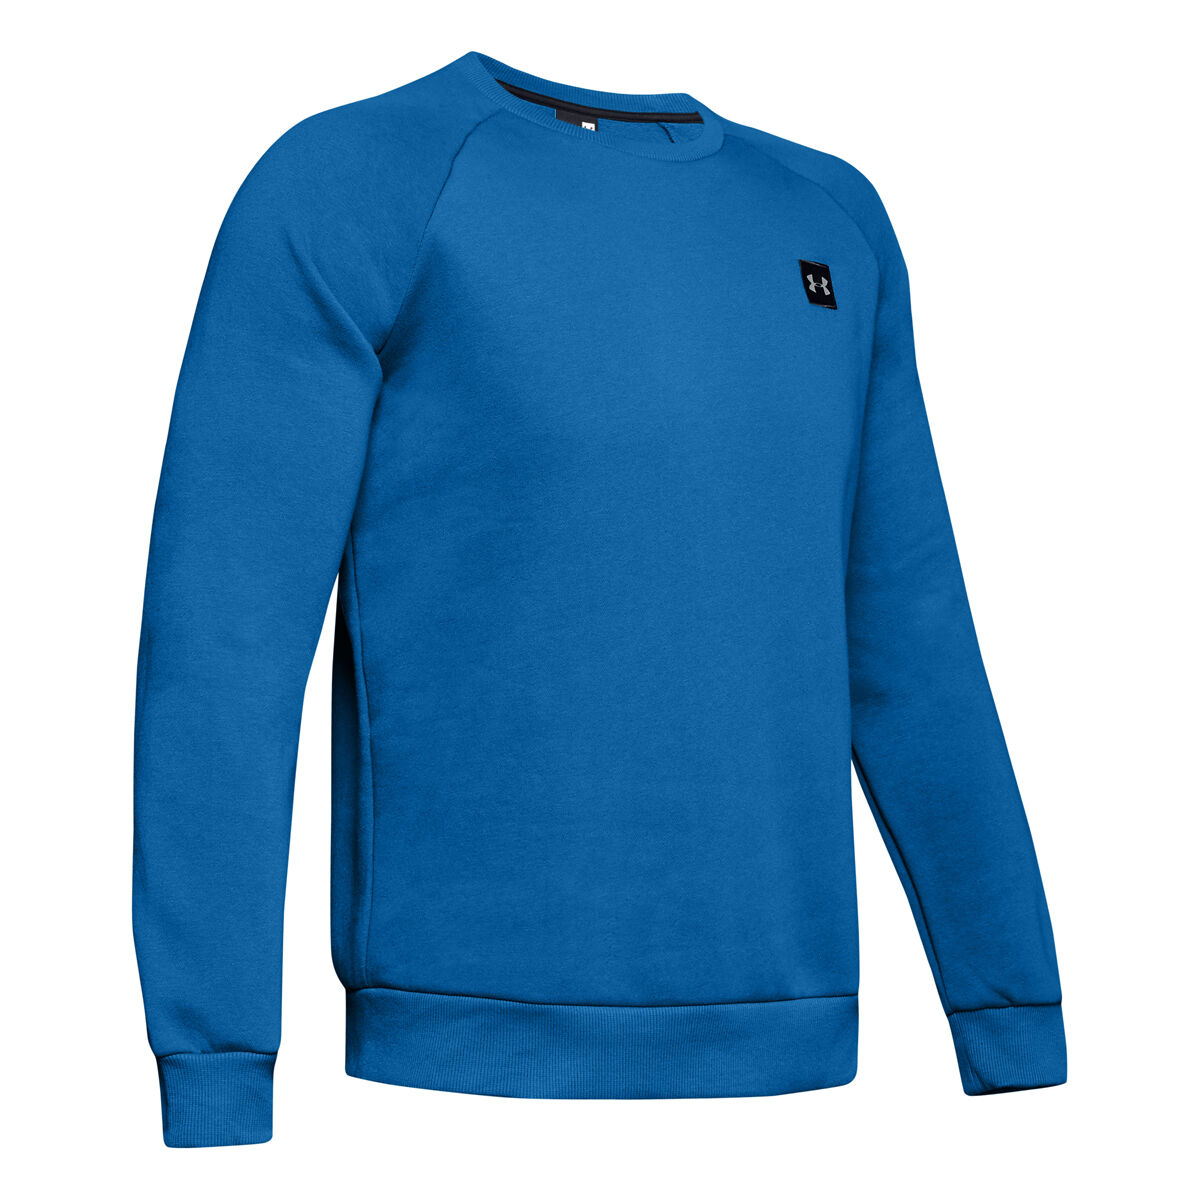 blue under armour sweatshirt